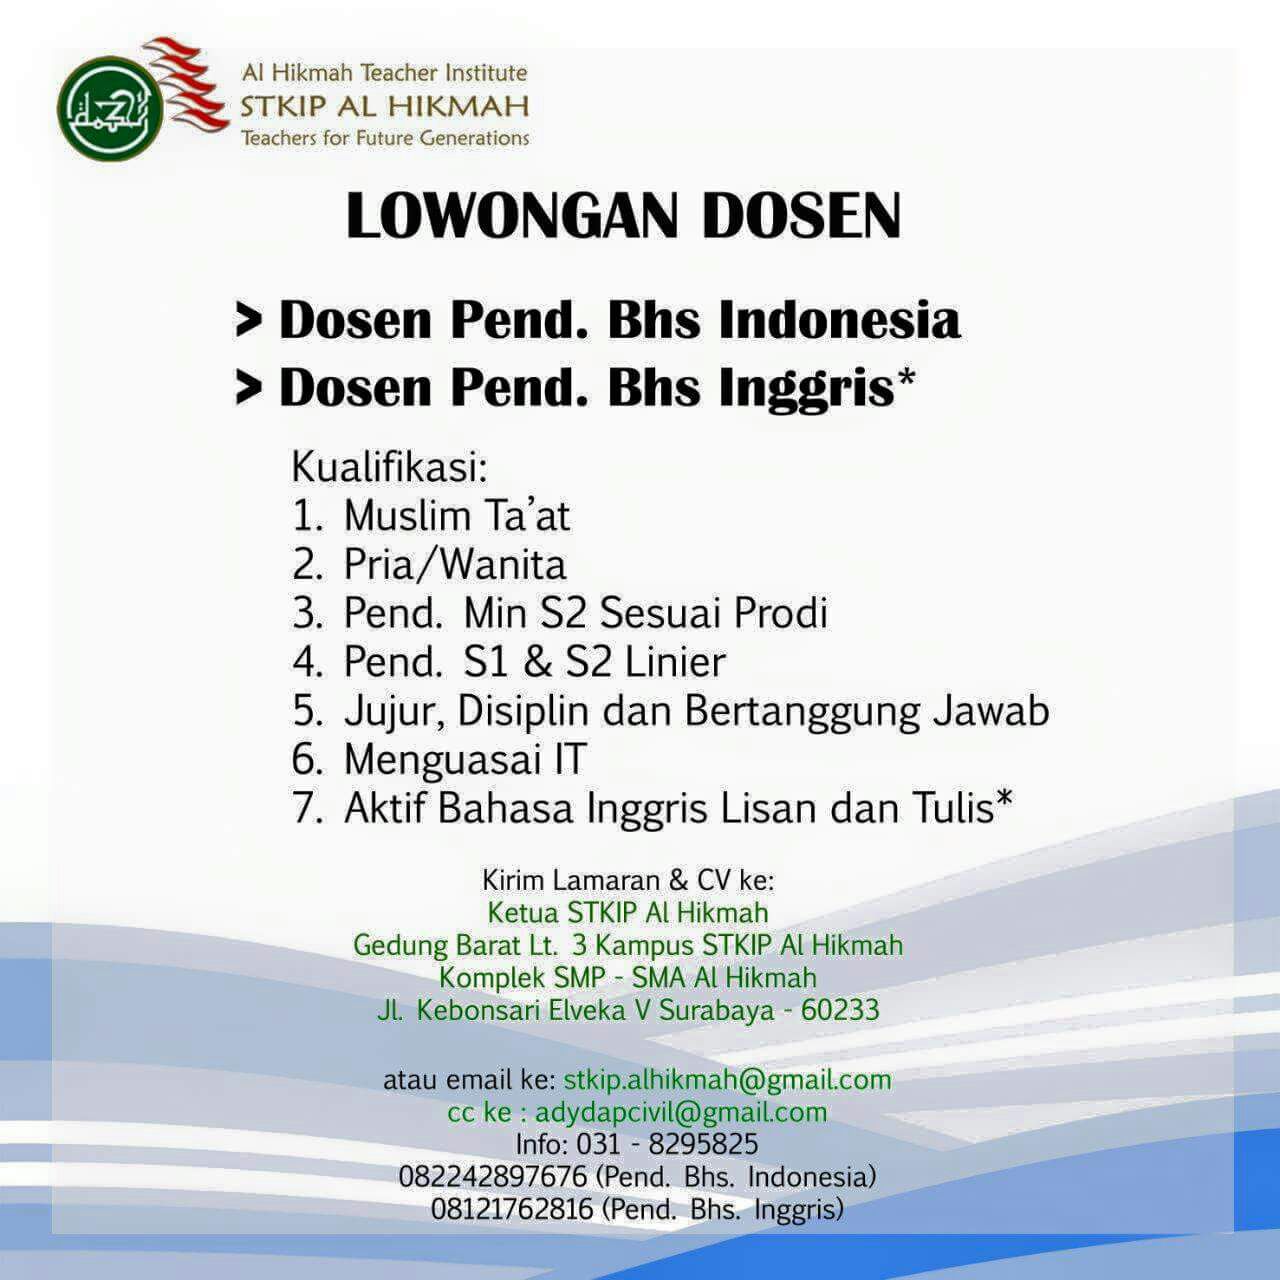 Lowongan Dosen Di Surabaya - Loker BUMN